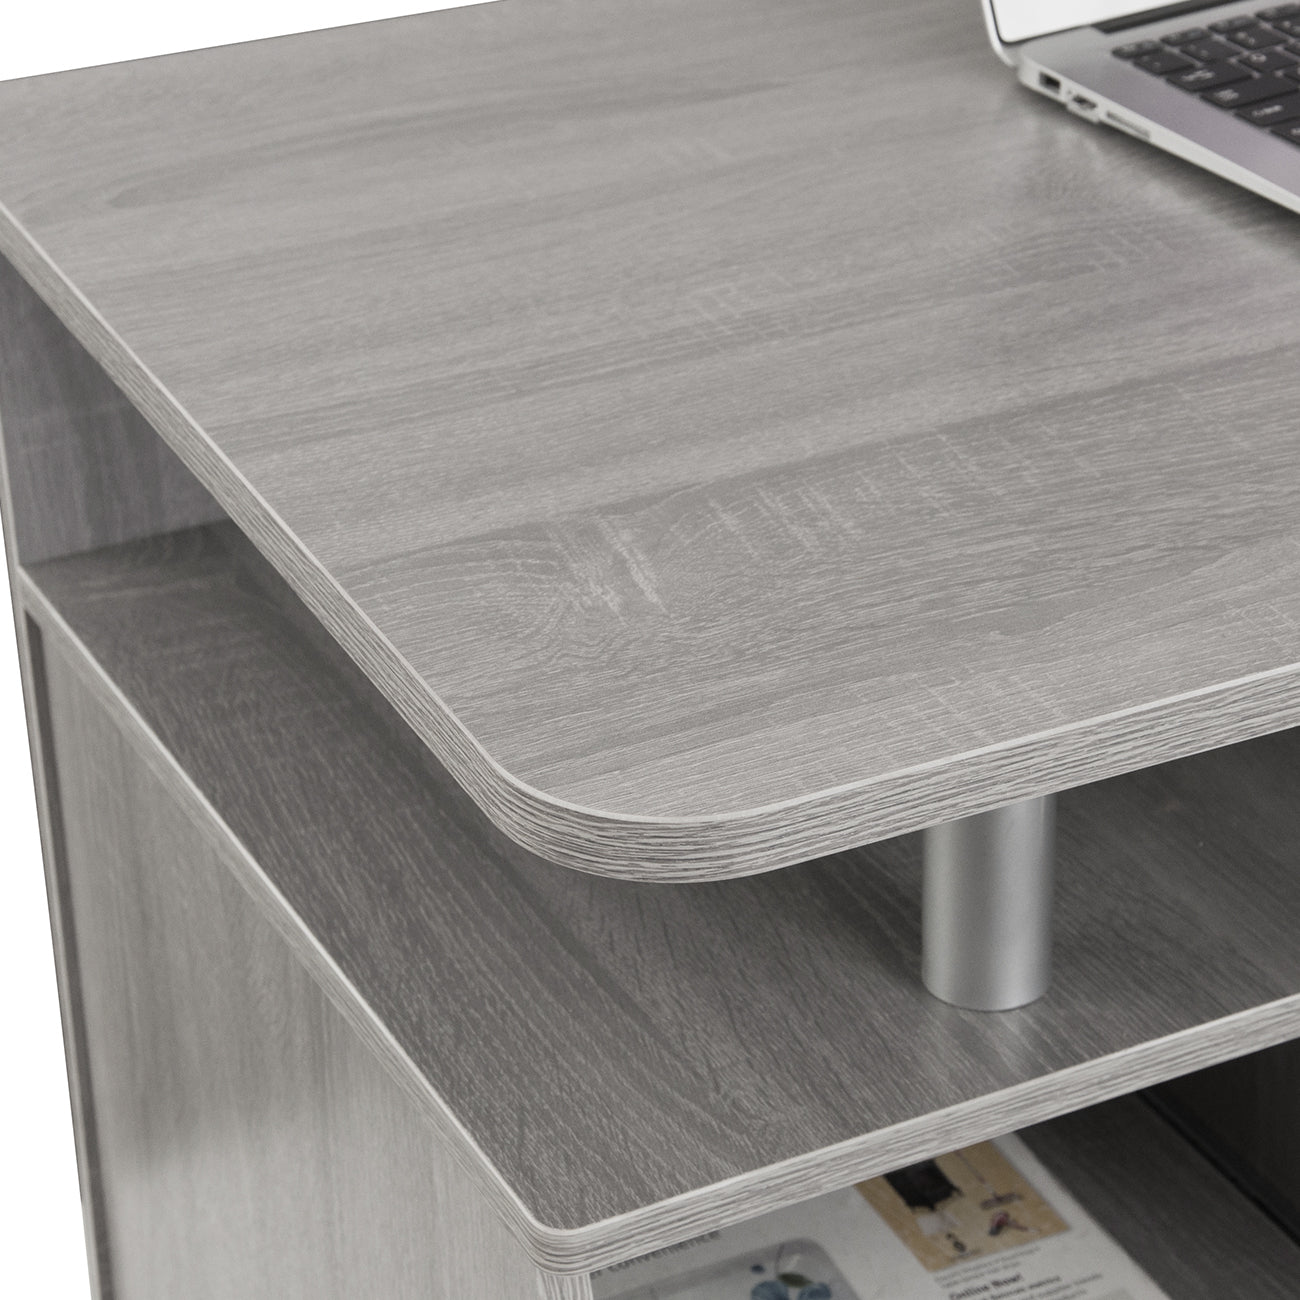 Computer Workstation Desk With Storage, Grey